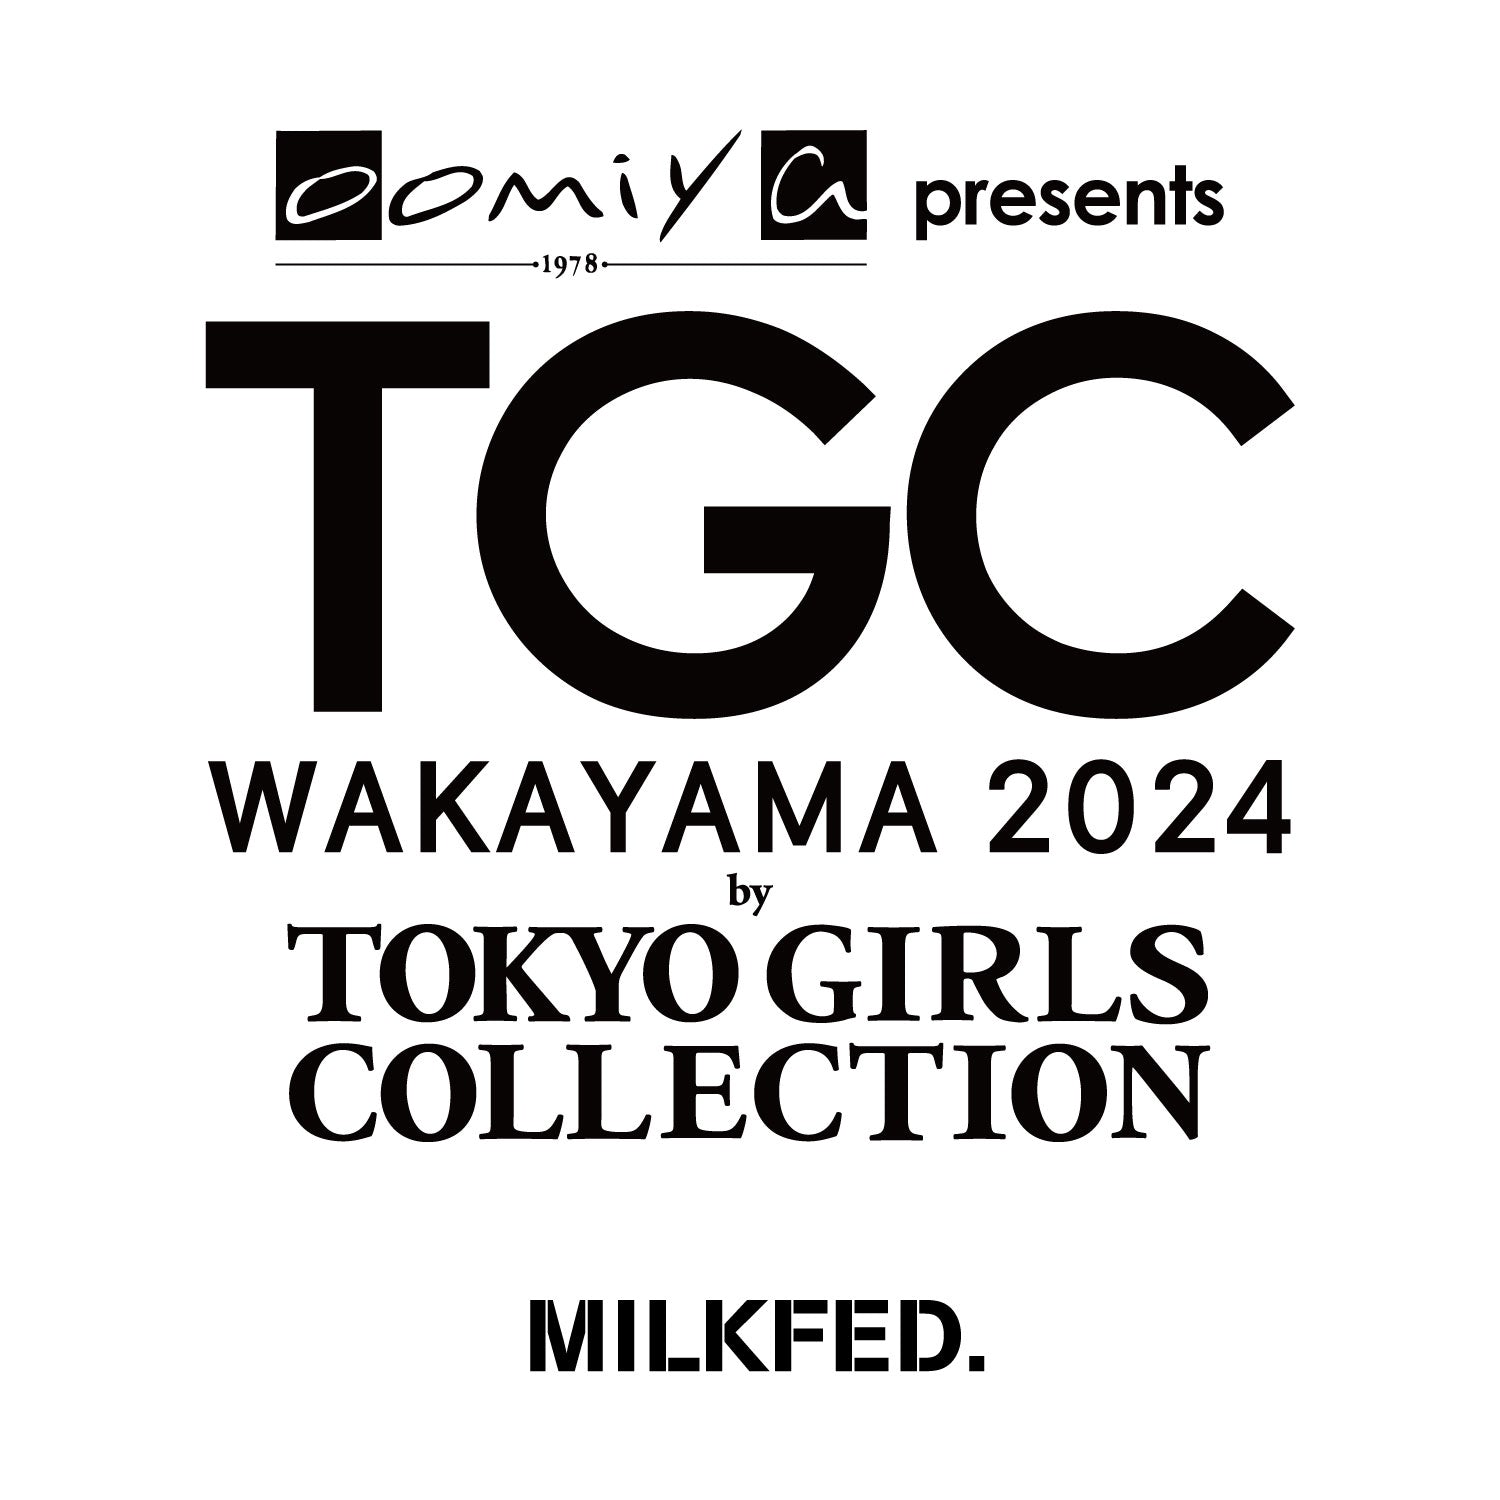 TGC WAKAYAMA 2024